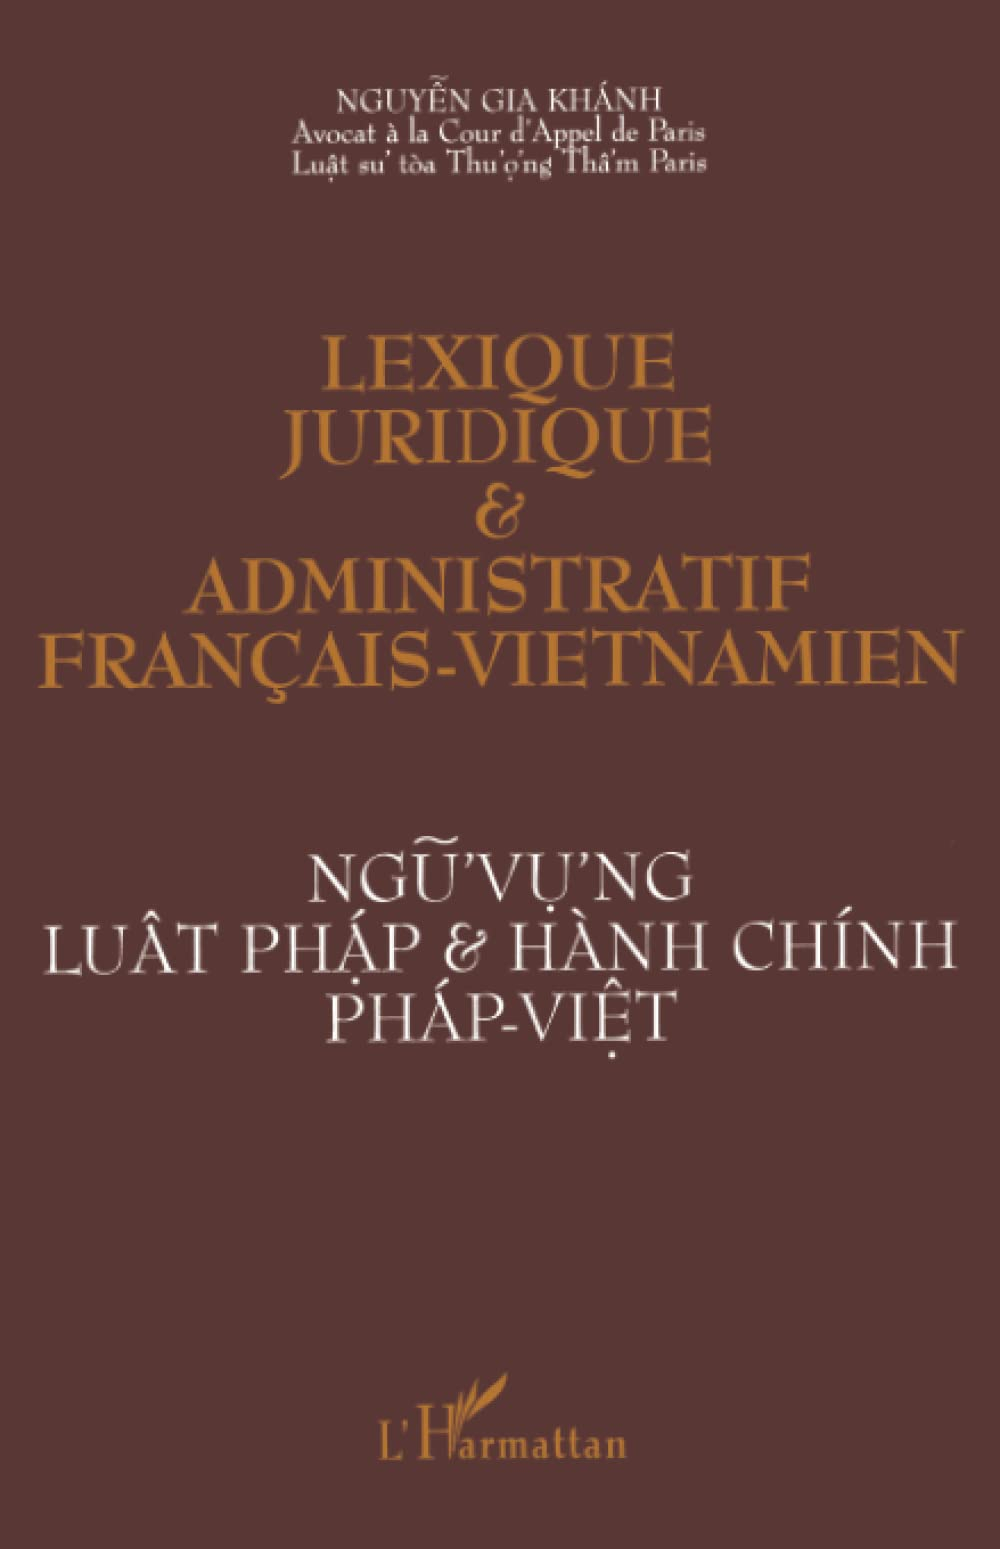 Lexique juridique et administratif français-vietnamien. Ngu'vu'ng luat phap & hanh chinh phap-viet